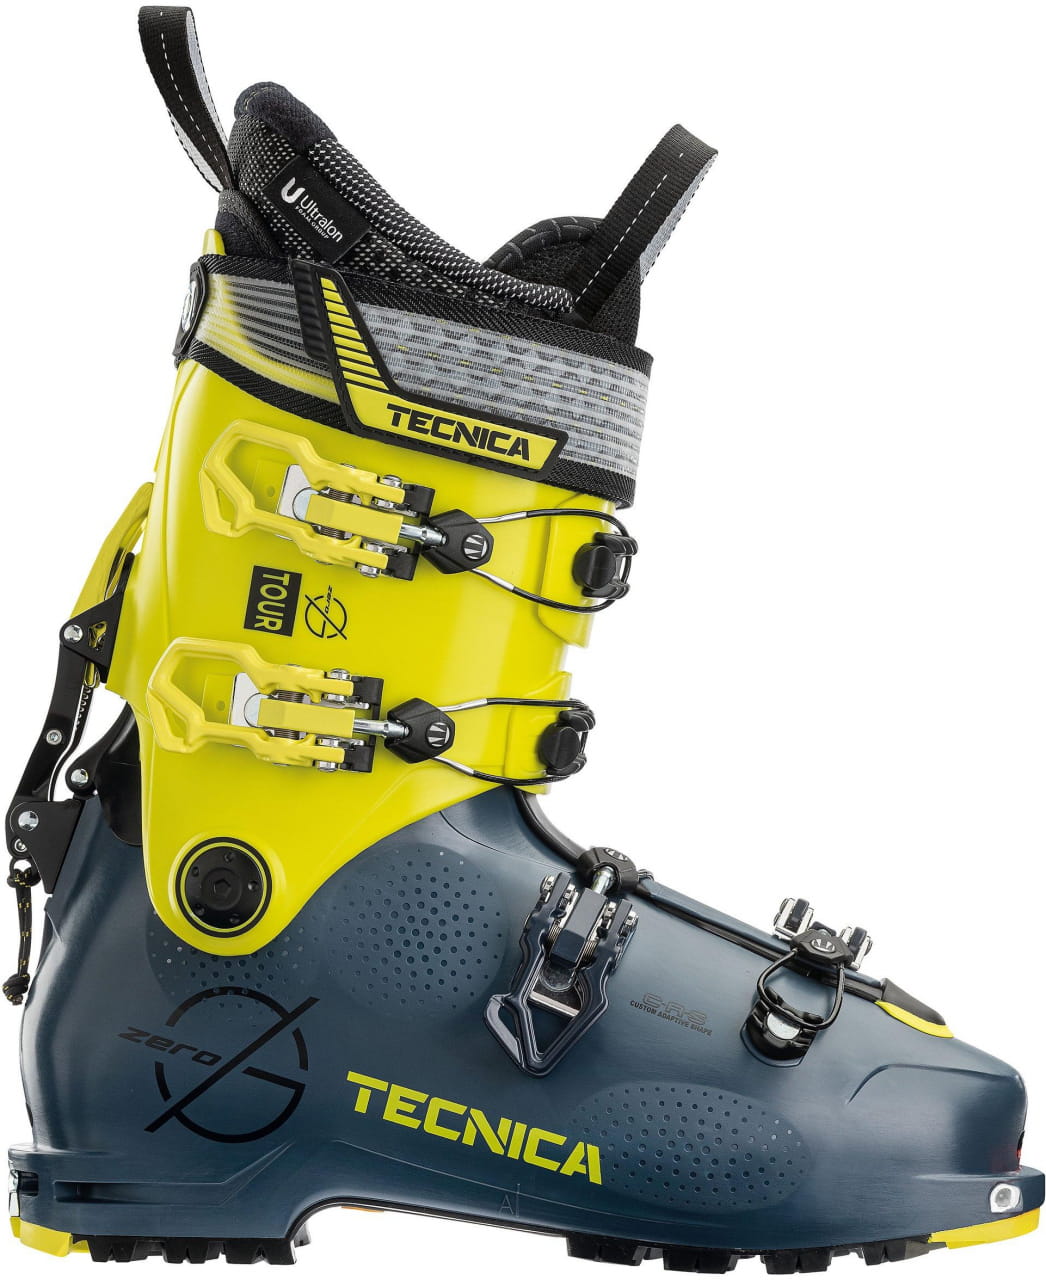 Buty narciarskie do wspinaczki górskiej Tecnica Zero G Tour